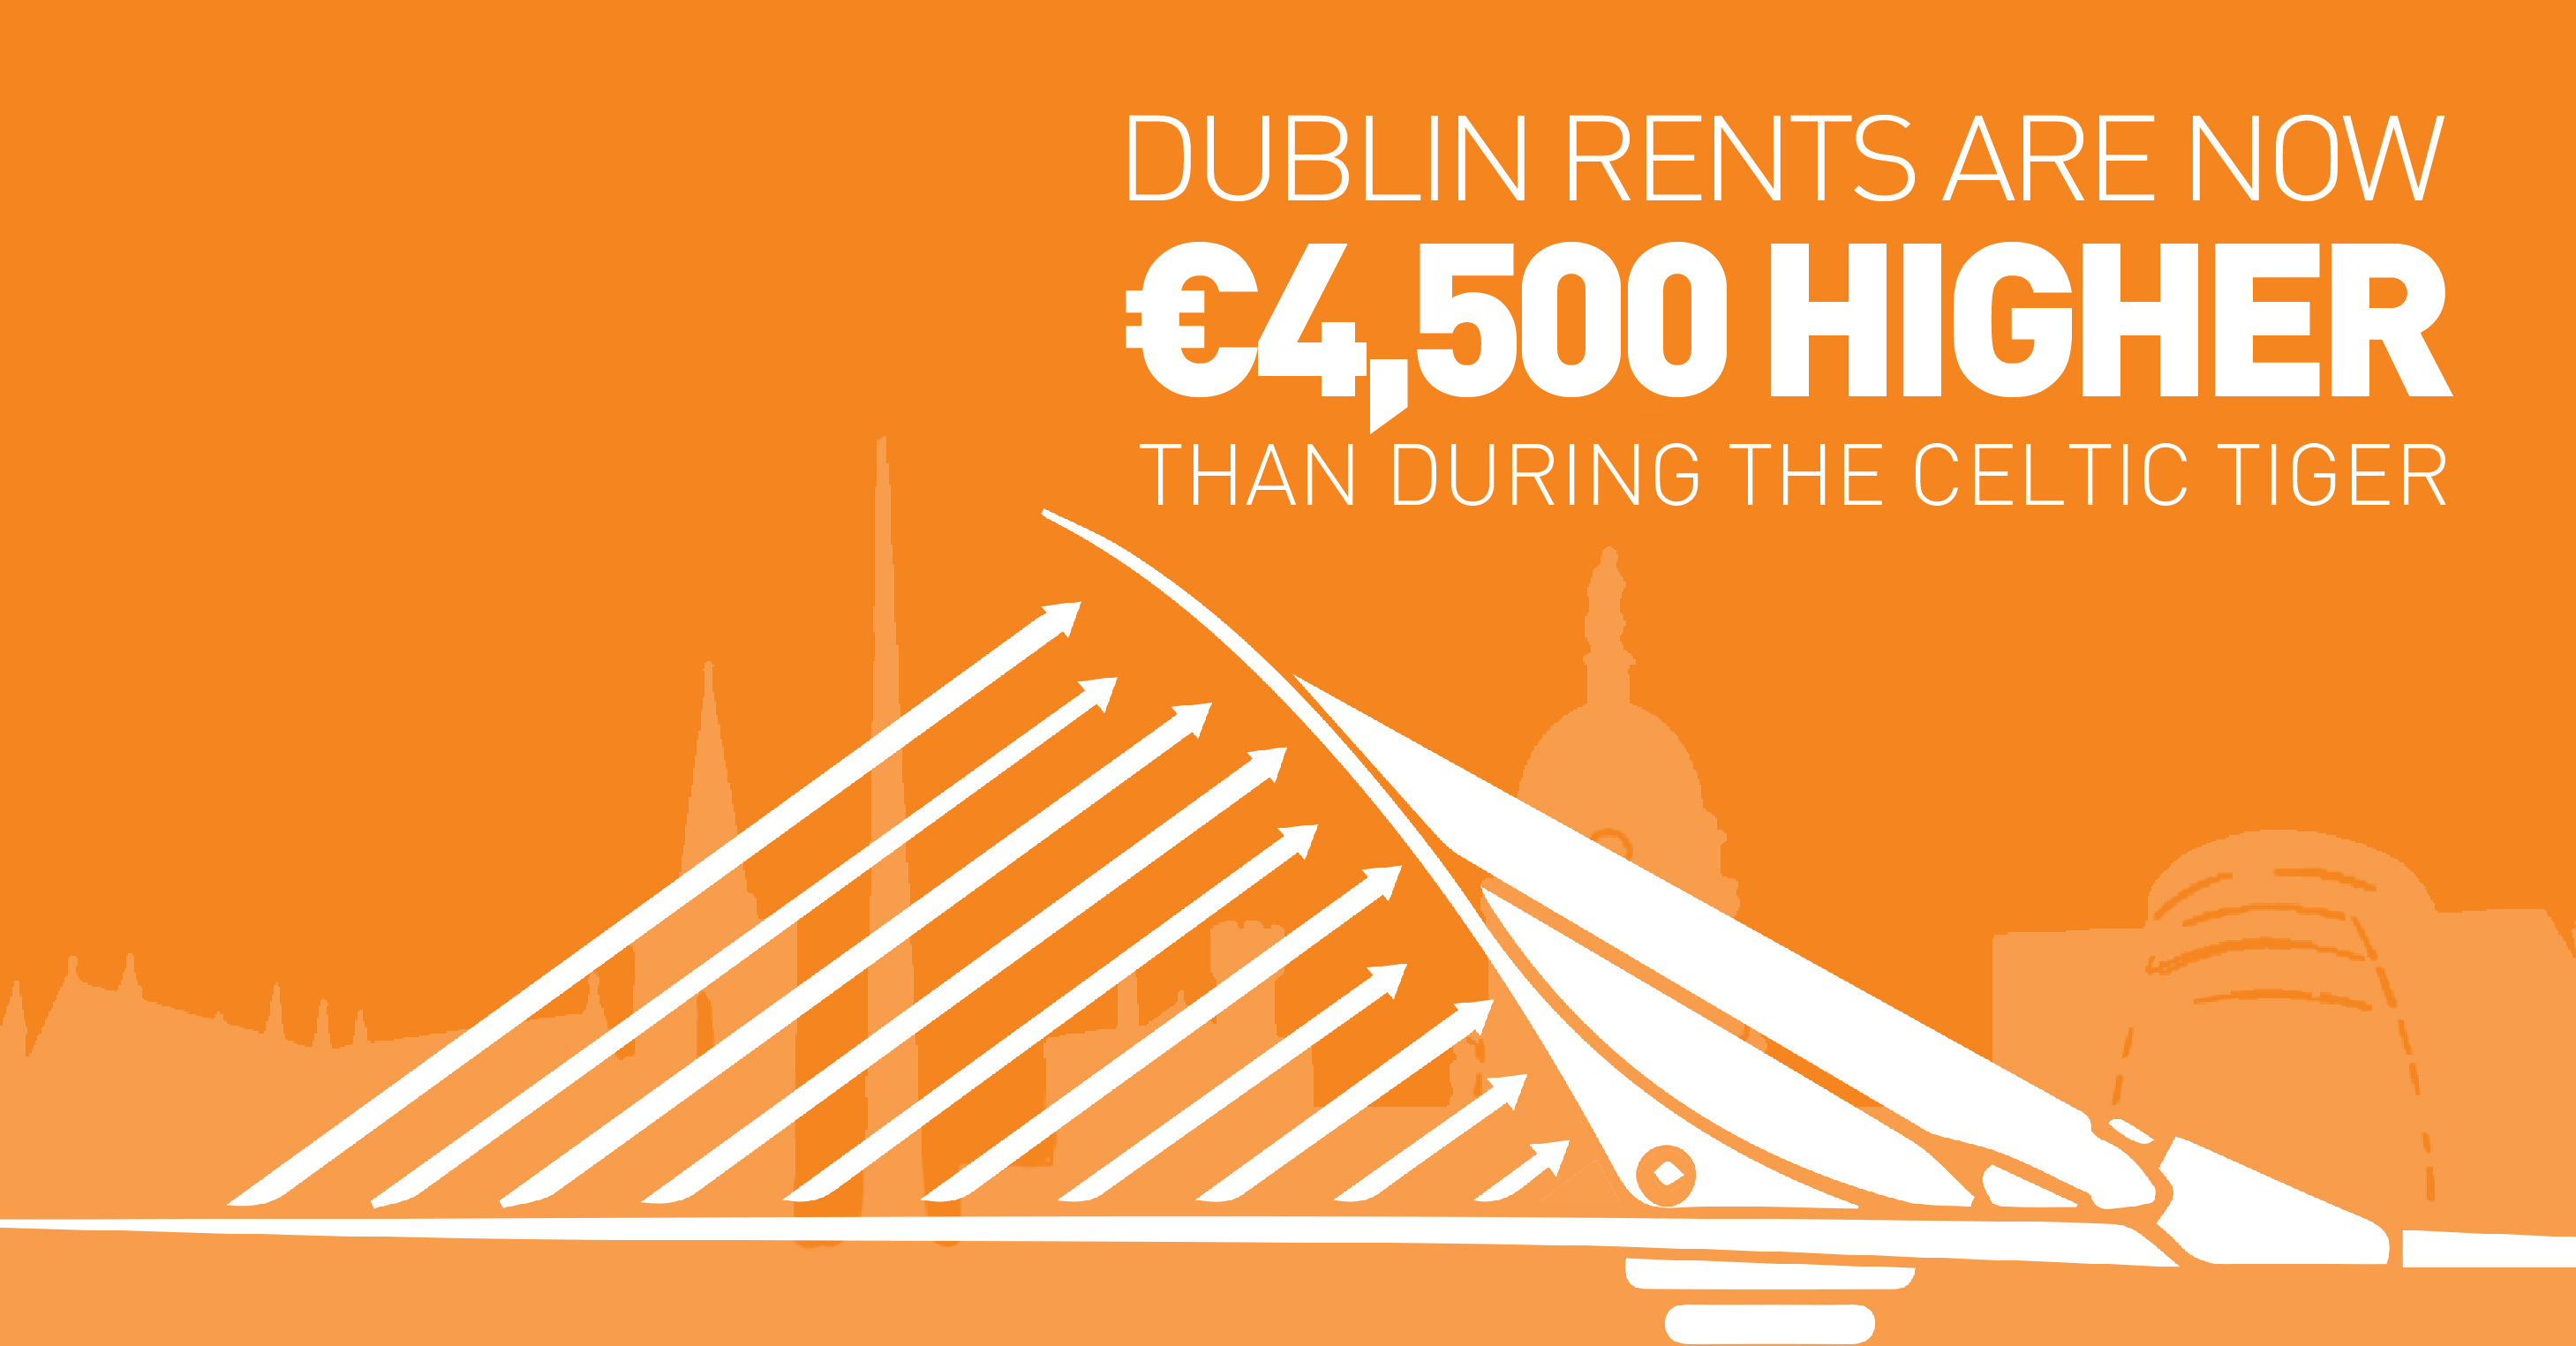 Dublin rents